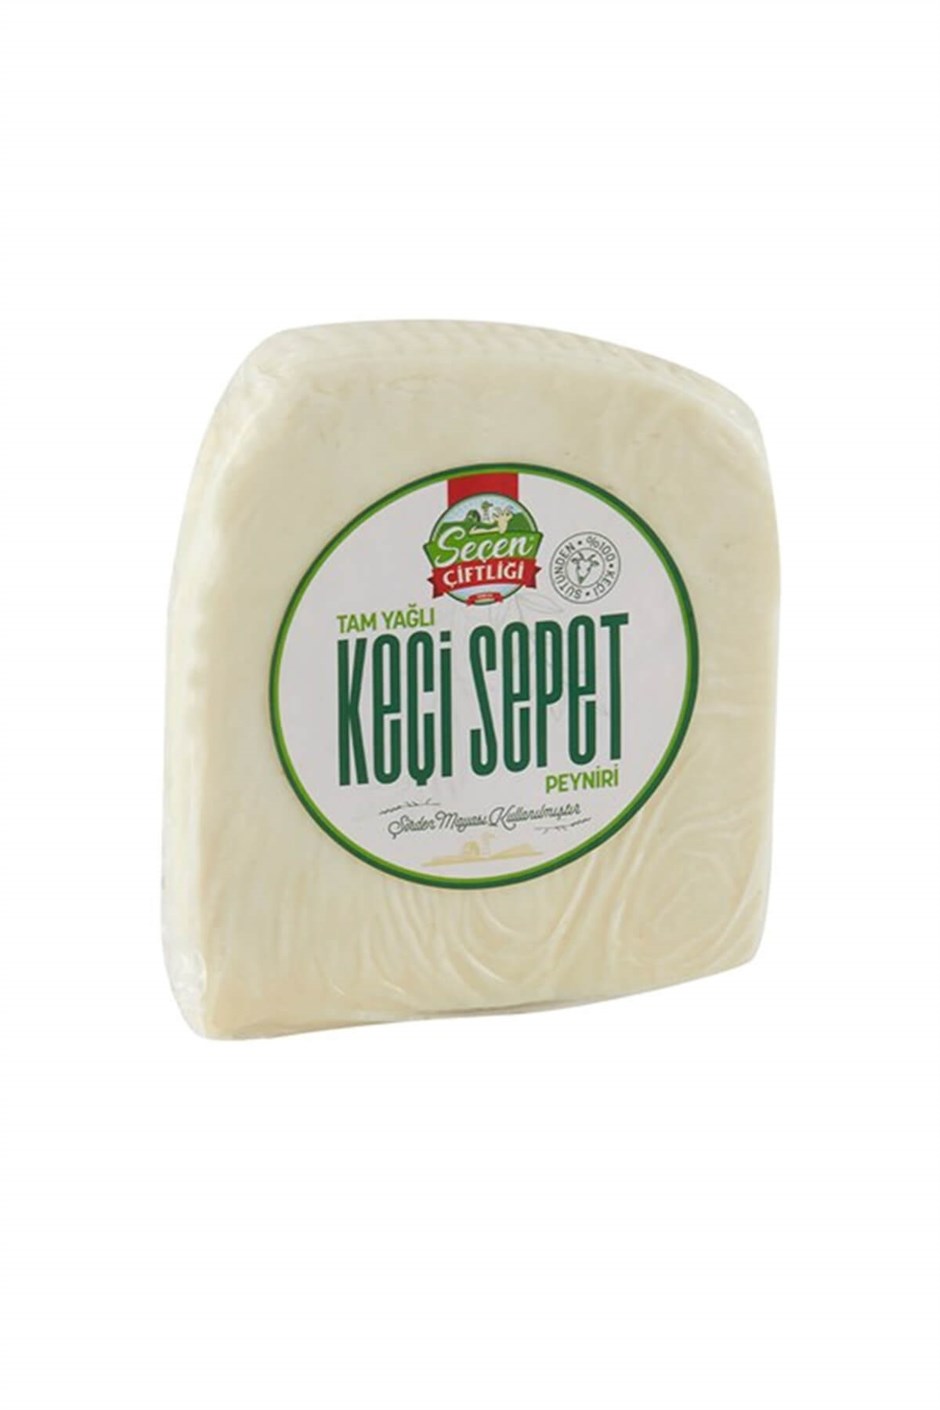 Seçen Çiftliği Tam Yağlı Olgunlaşttırılmış Keçi Sepet Peynir 200 g